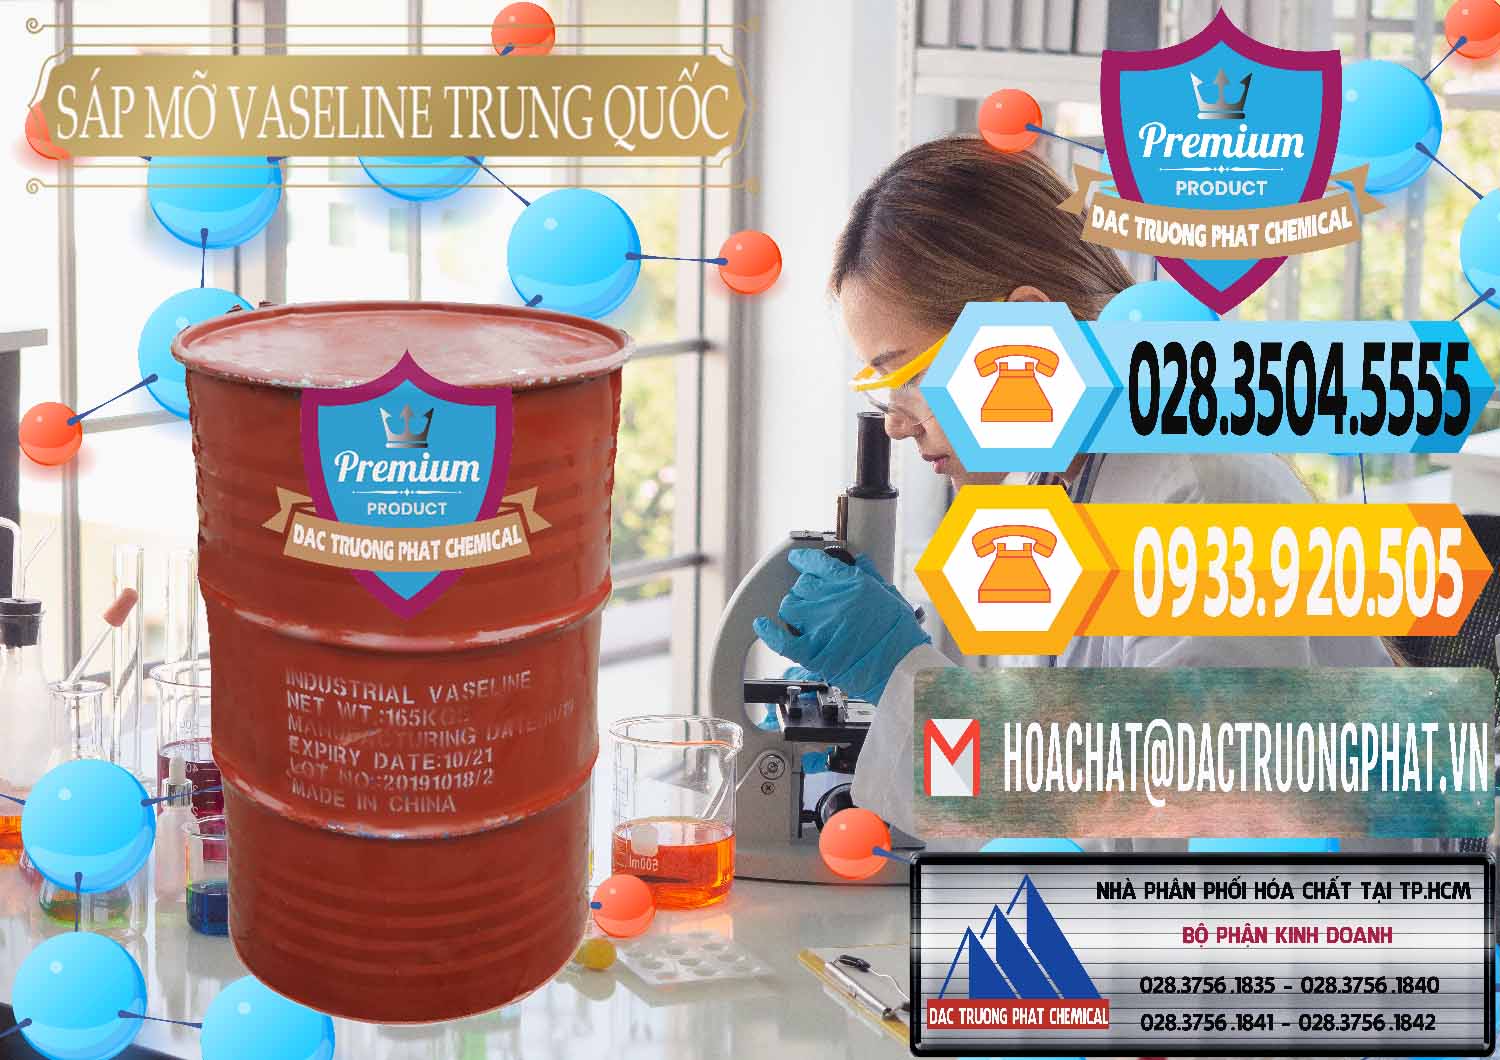 Chuyên kinh doanh & bán Sáp Mỡ Vaseline Trung Quốc China - 0122 - Nơi nhập khẩu ( phân phối ) hóa chất tại TP.HCM - hoachattayrua.net